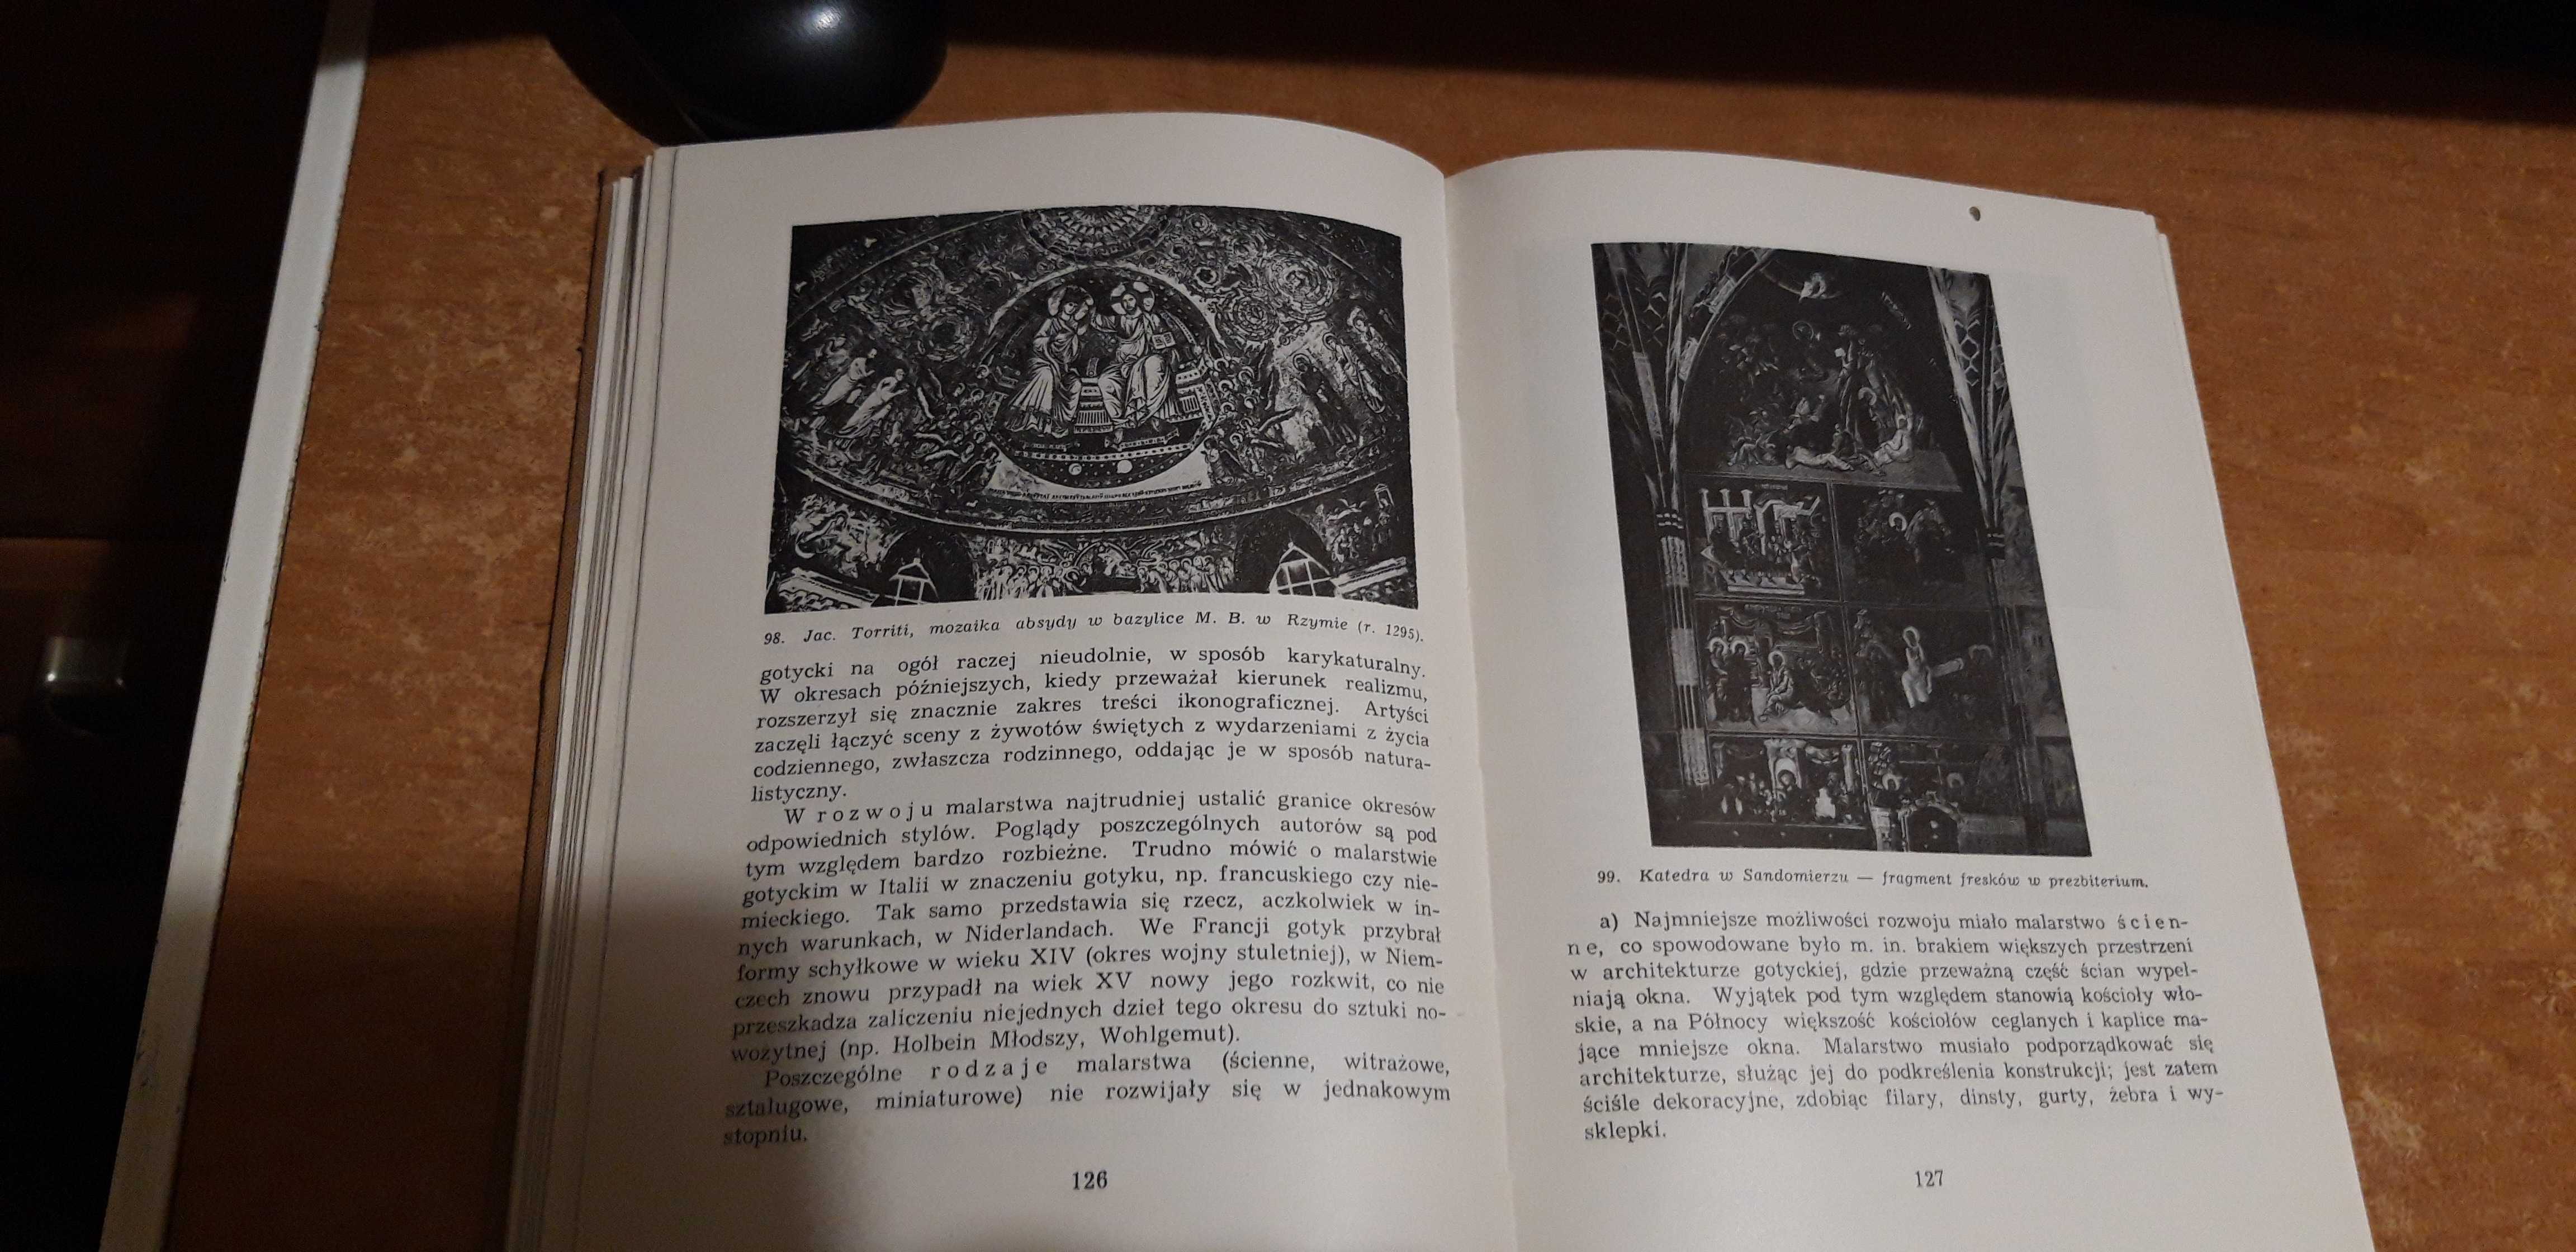 Historia Sztuki Kościelnej -Ks. Liedtke- P-ń 1961,il.,.5 tys.egz.,cudo